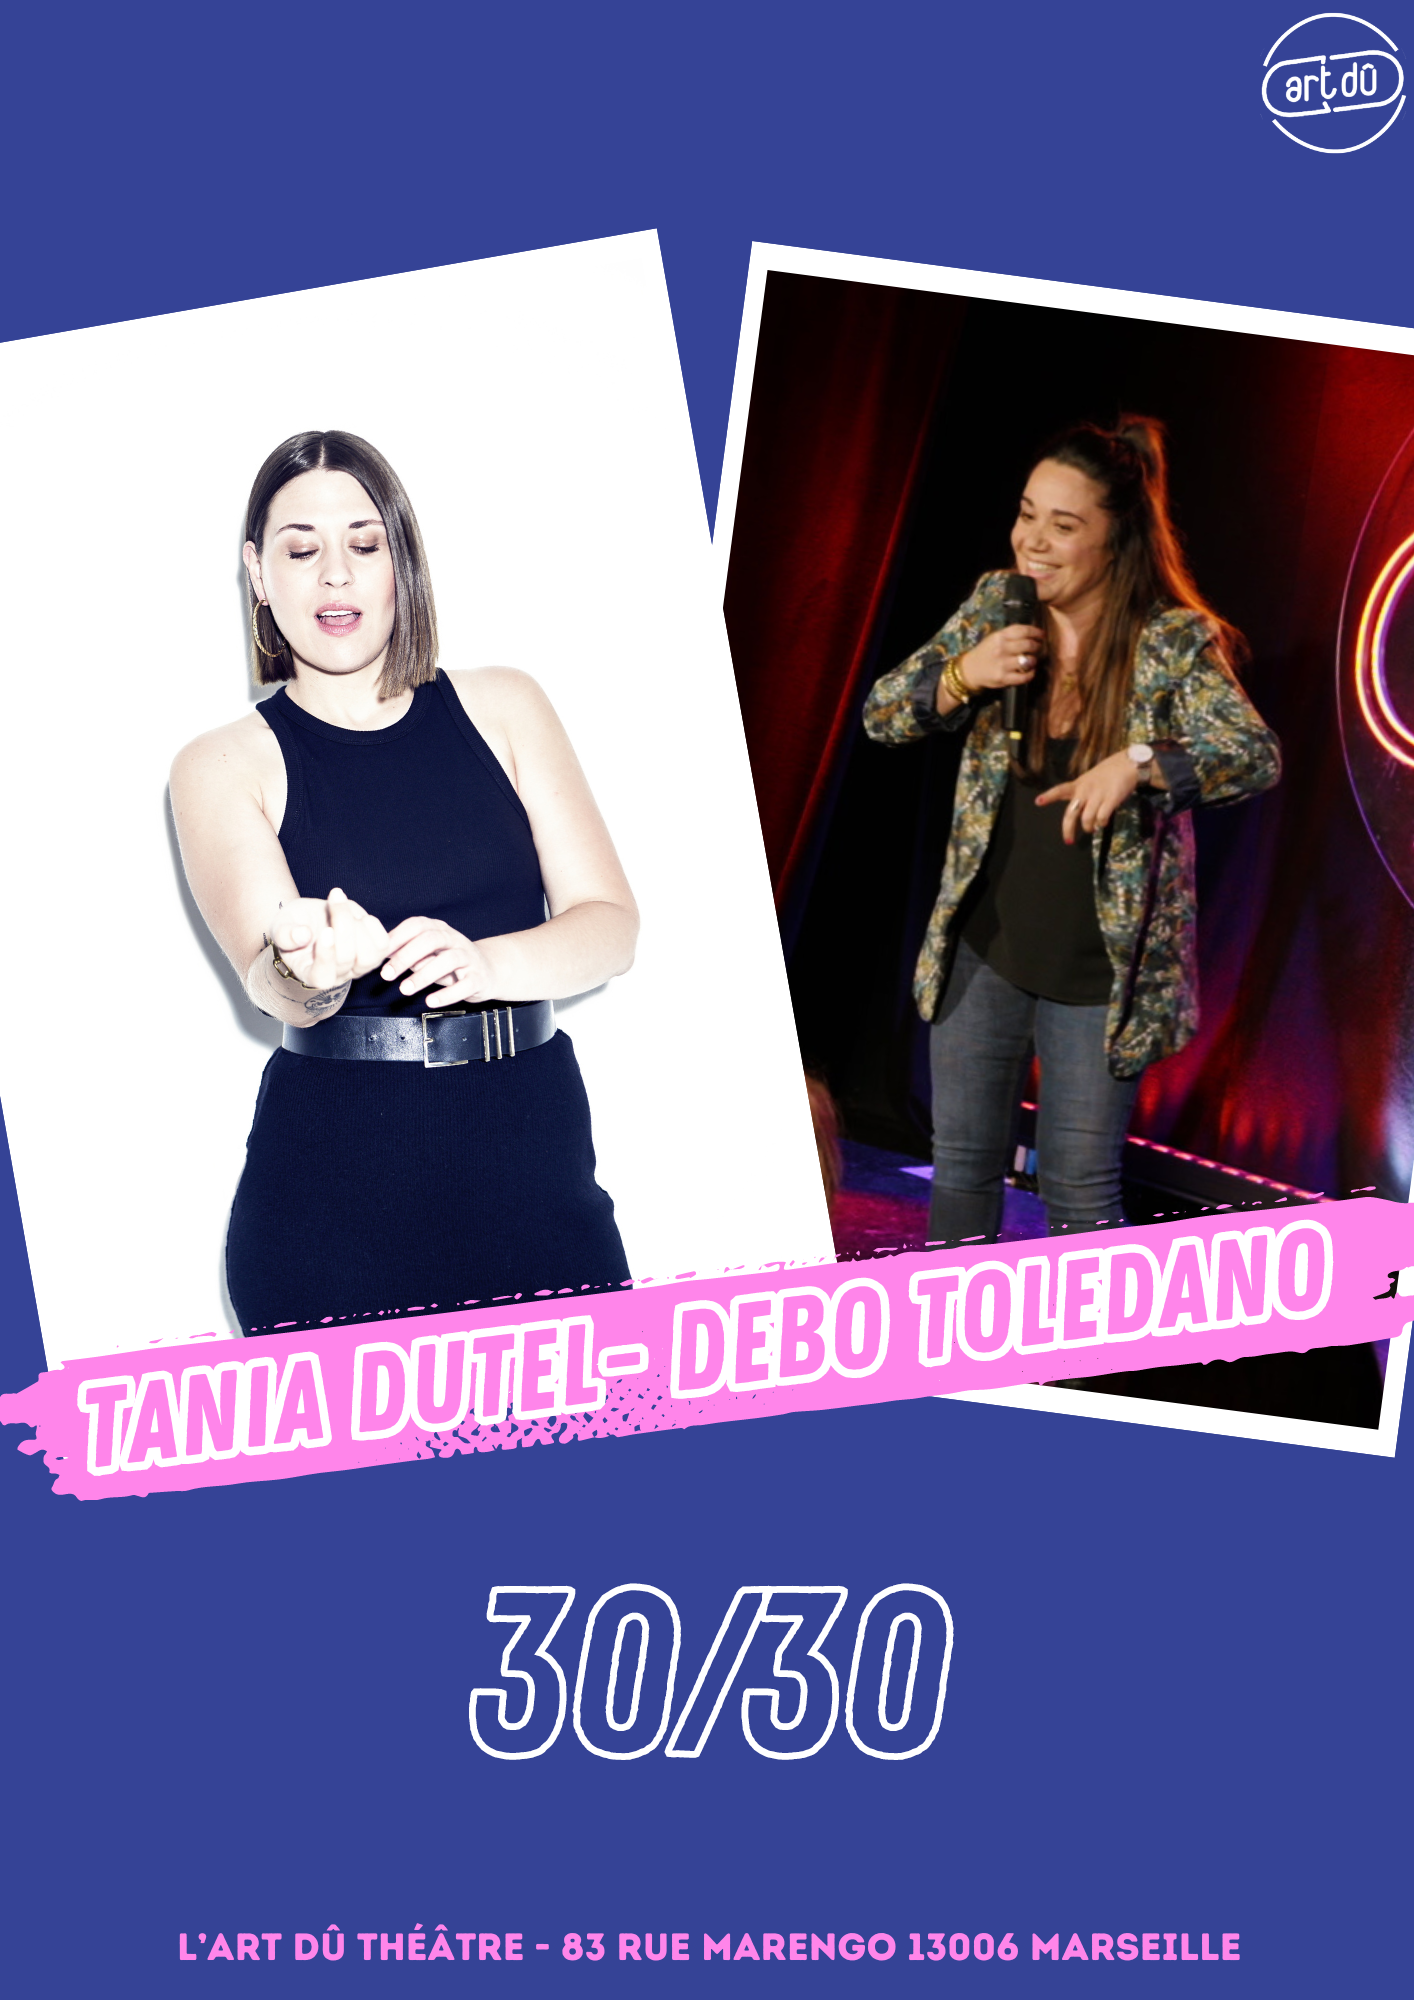 Tania Dutel & Debo Toledano : 30/30